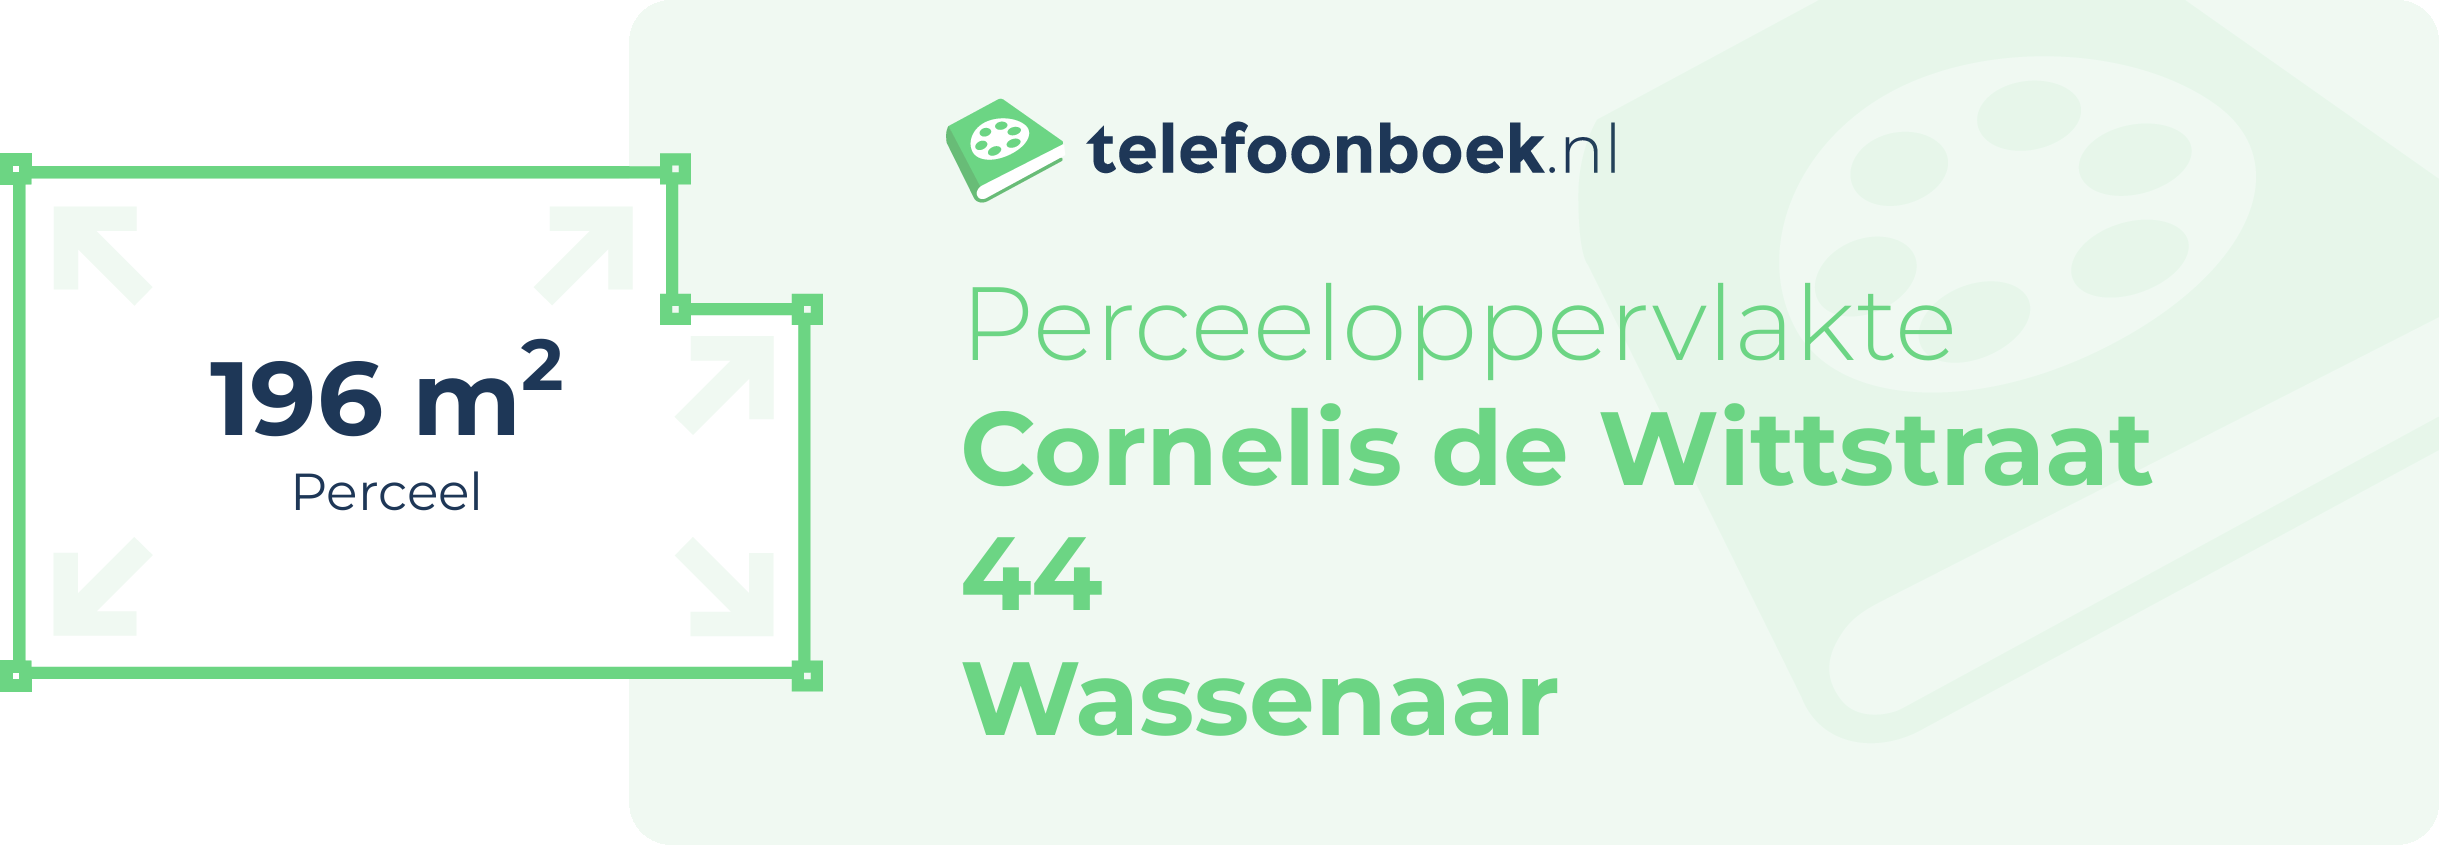 Perceeloppervlakte Cornelis De Wittstraat 44 Wassenaar